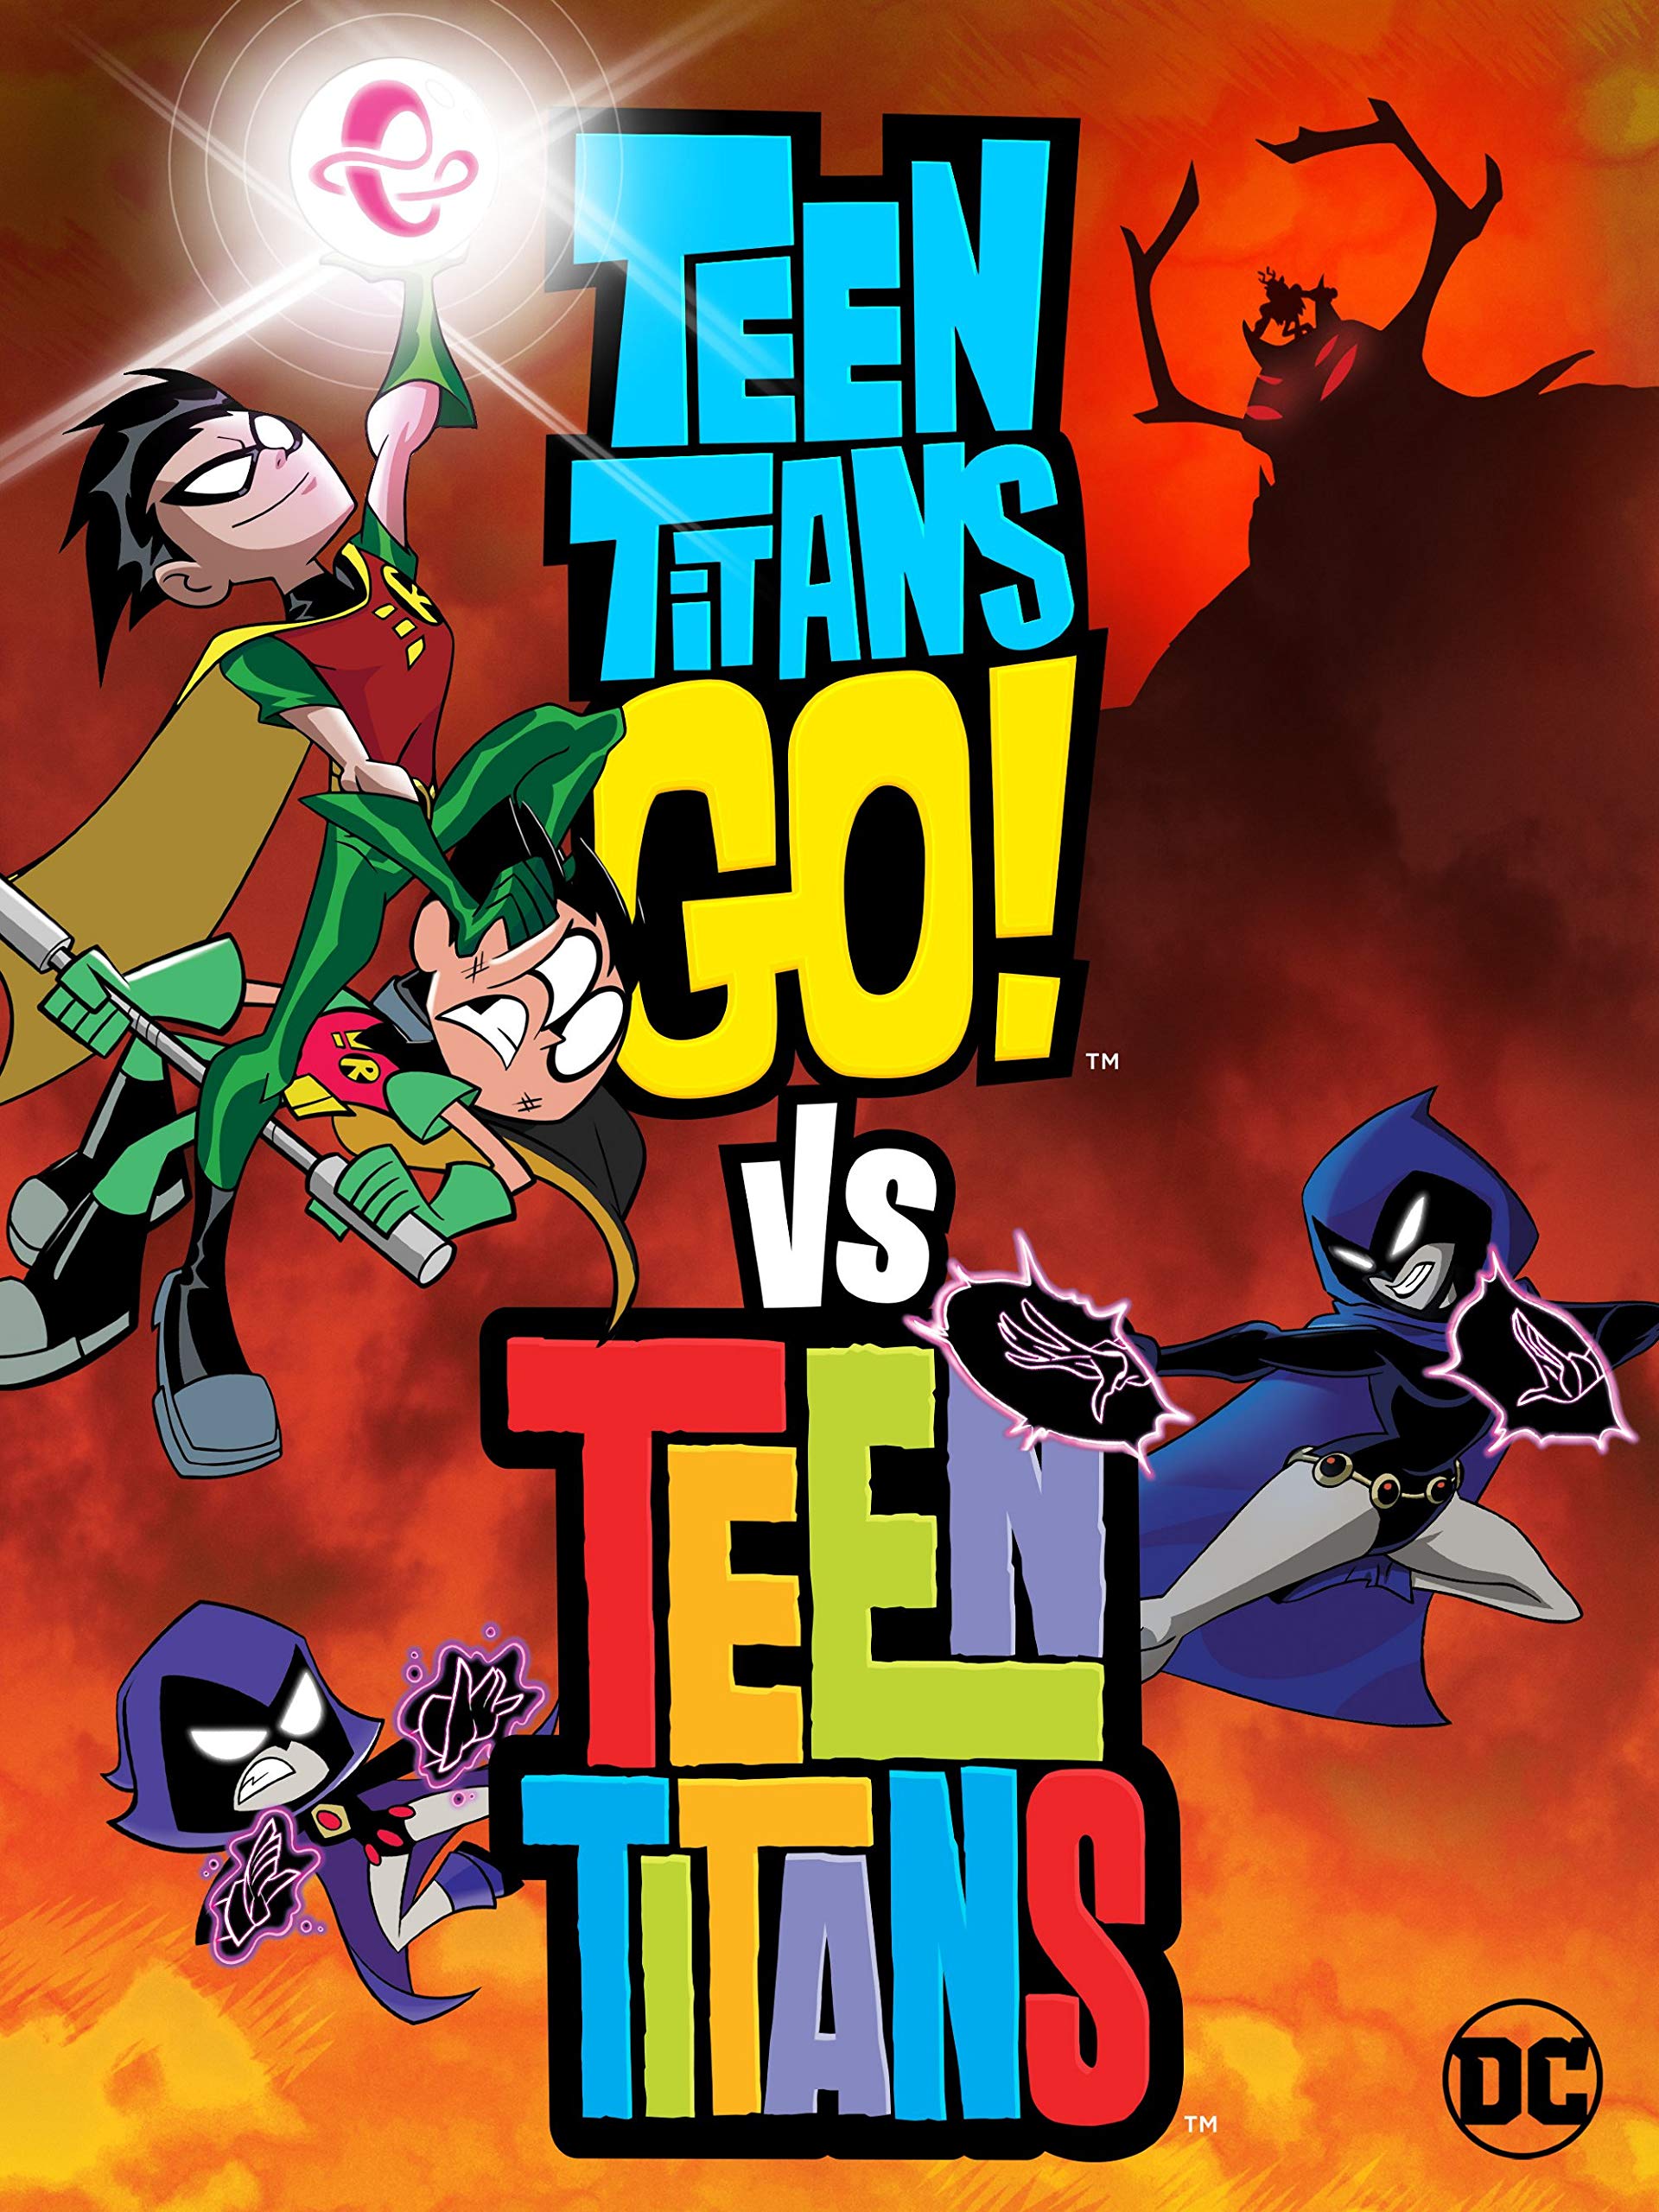 Download Teen Titans Go Vs Teen Titans 2019 Full Hd Quality